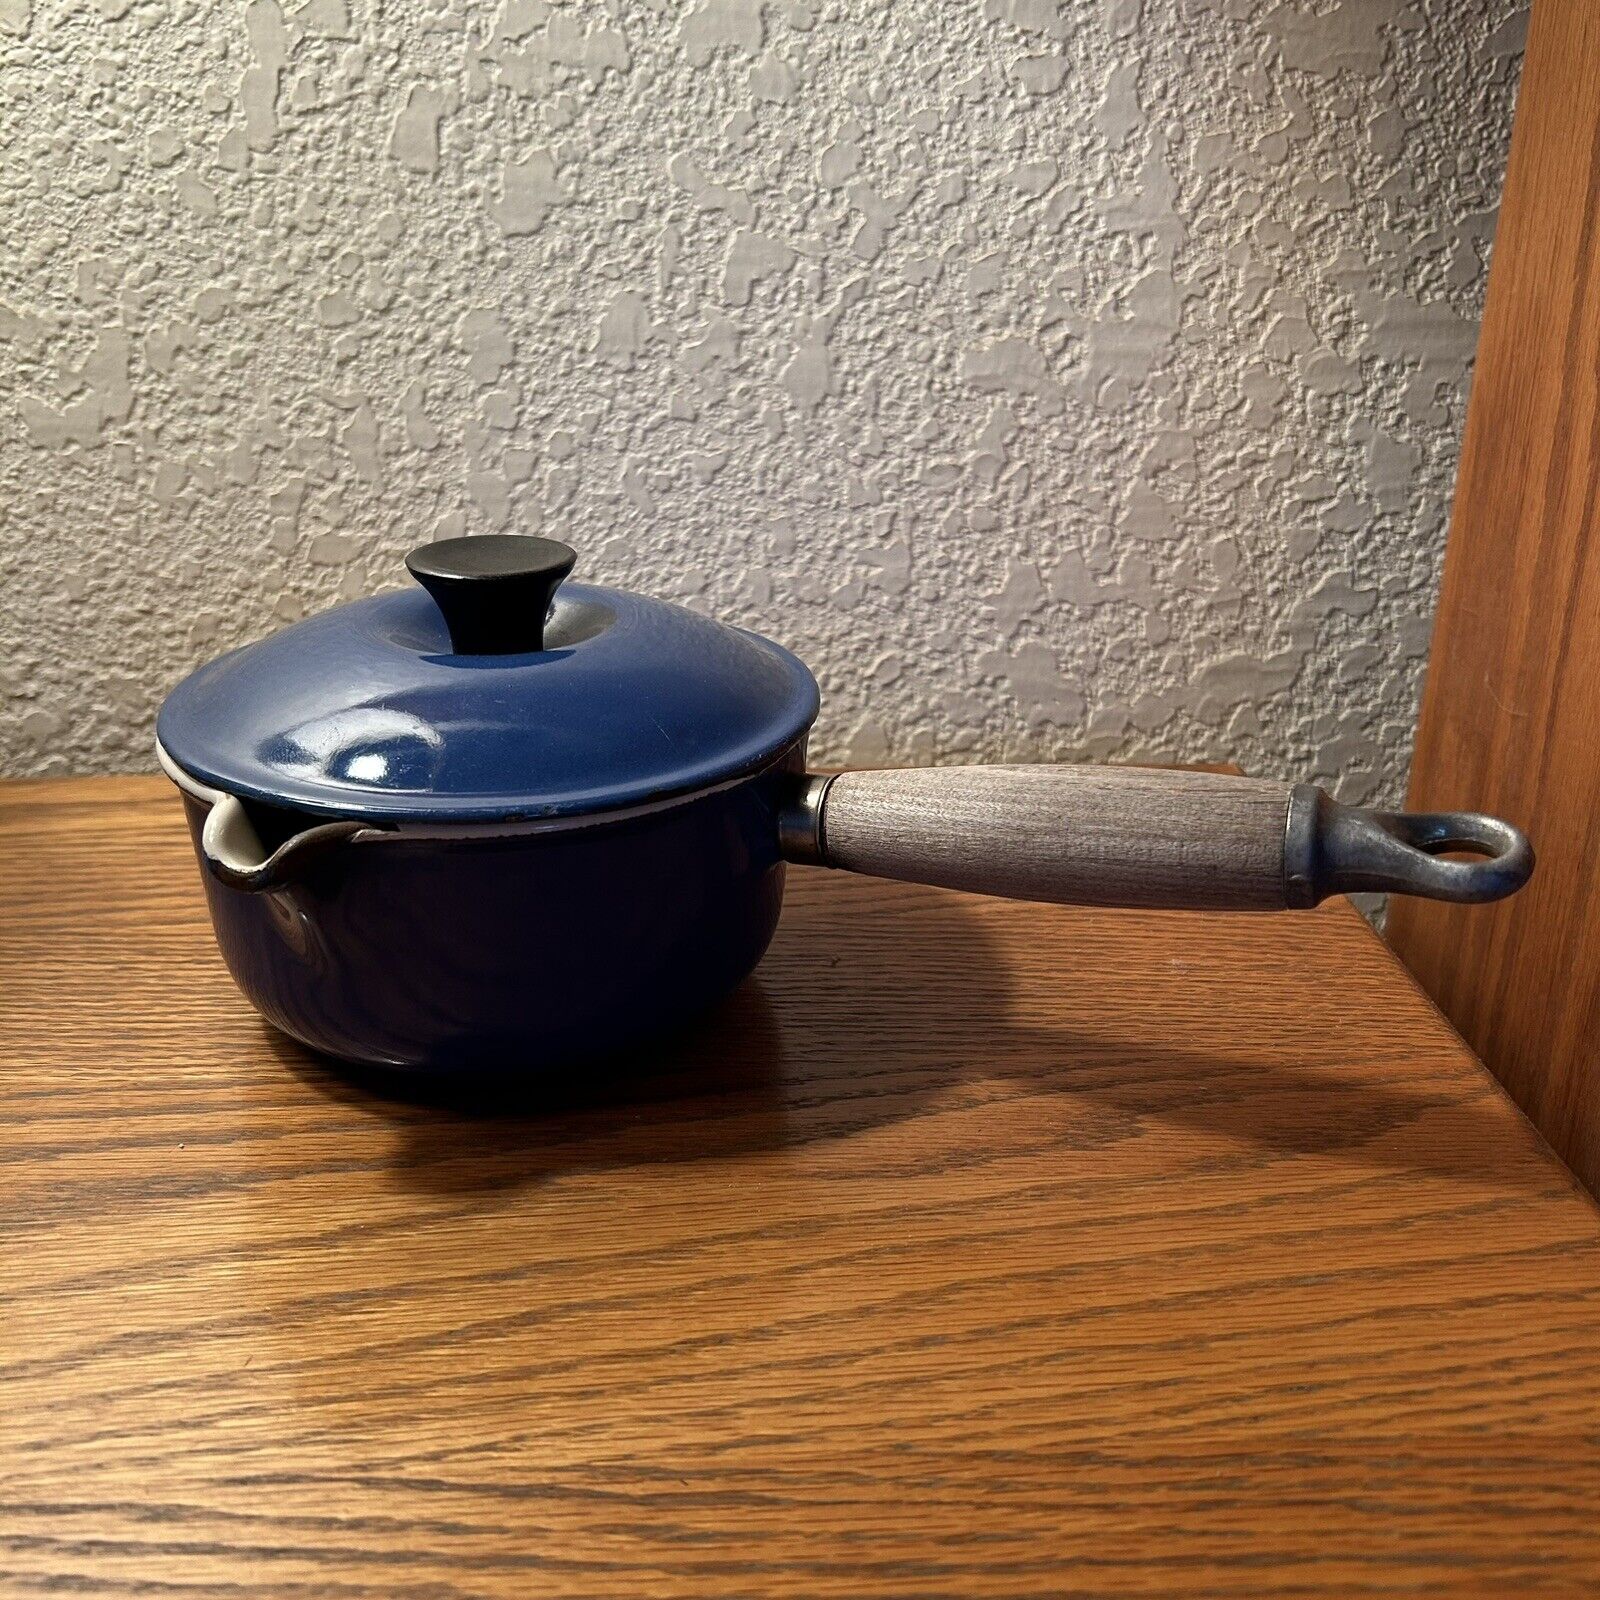 Vintage Le Creuset Sauce Pan #14 Blue Enamel Cast Iron Spout Wood Handle